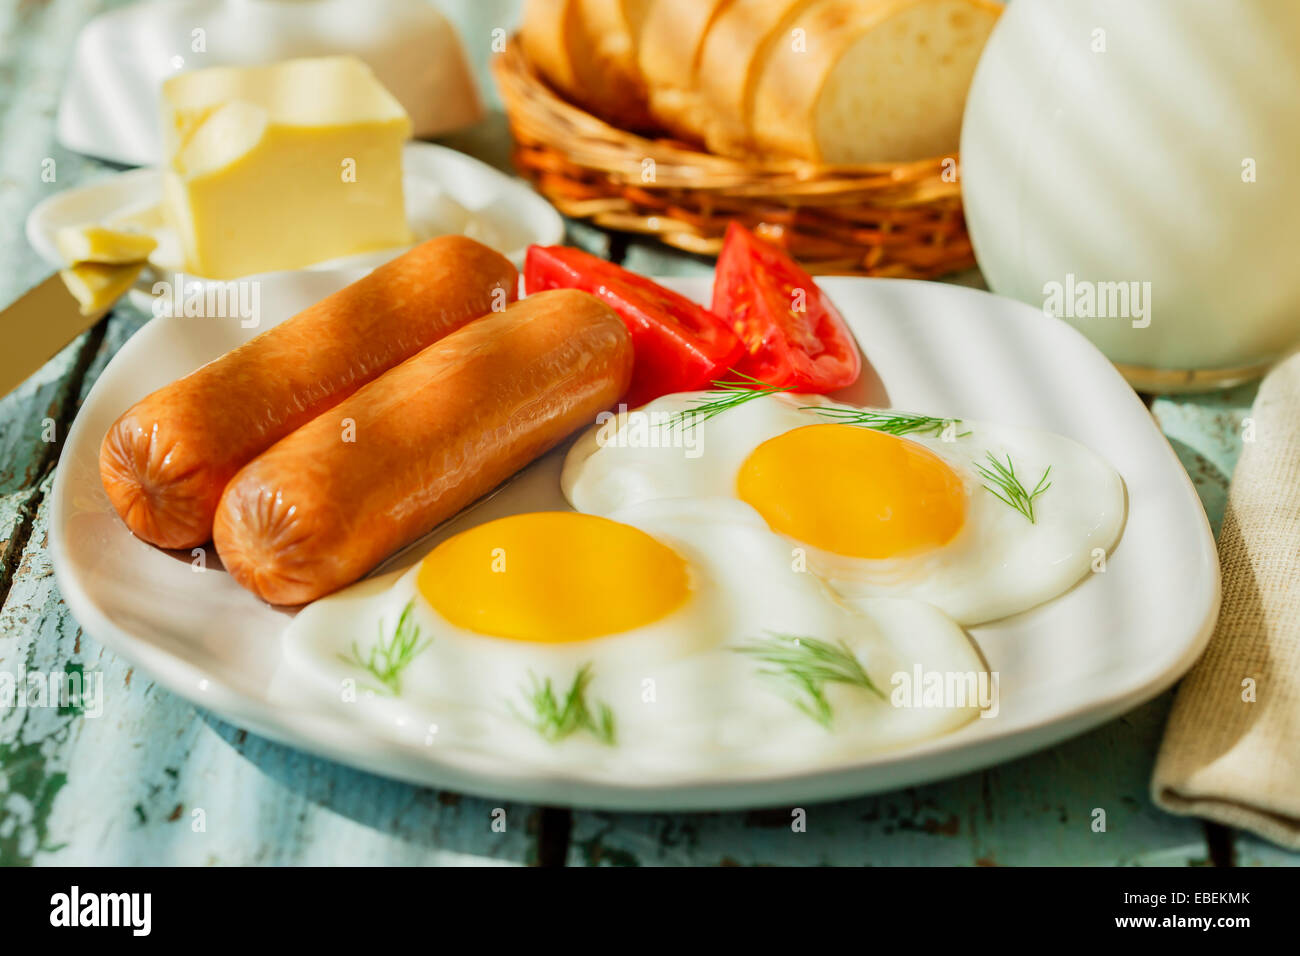 Spiegeleier mit Würstchen-Frühstück Stockfoto